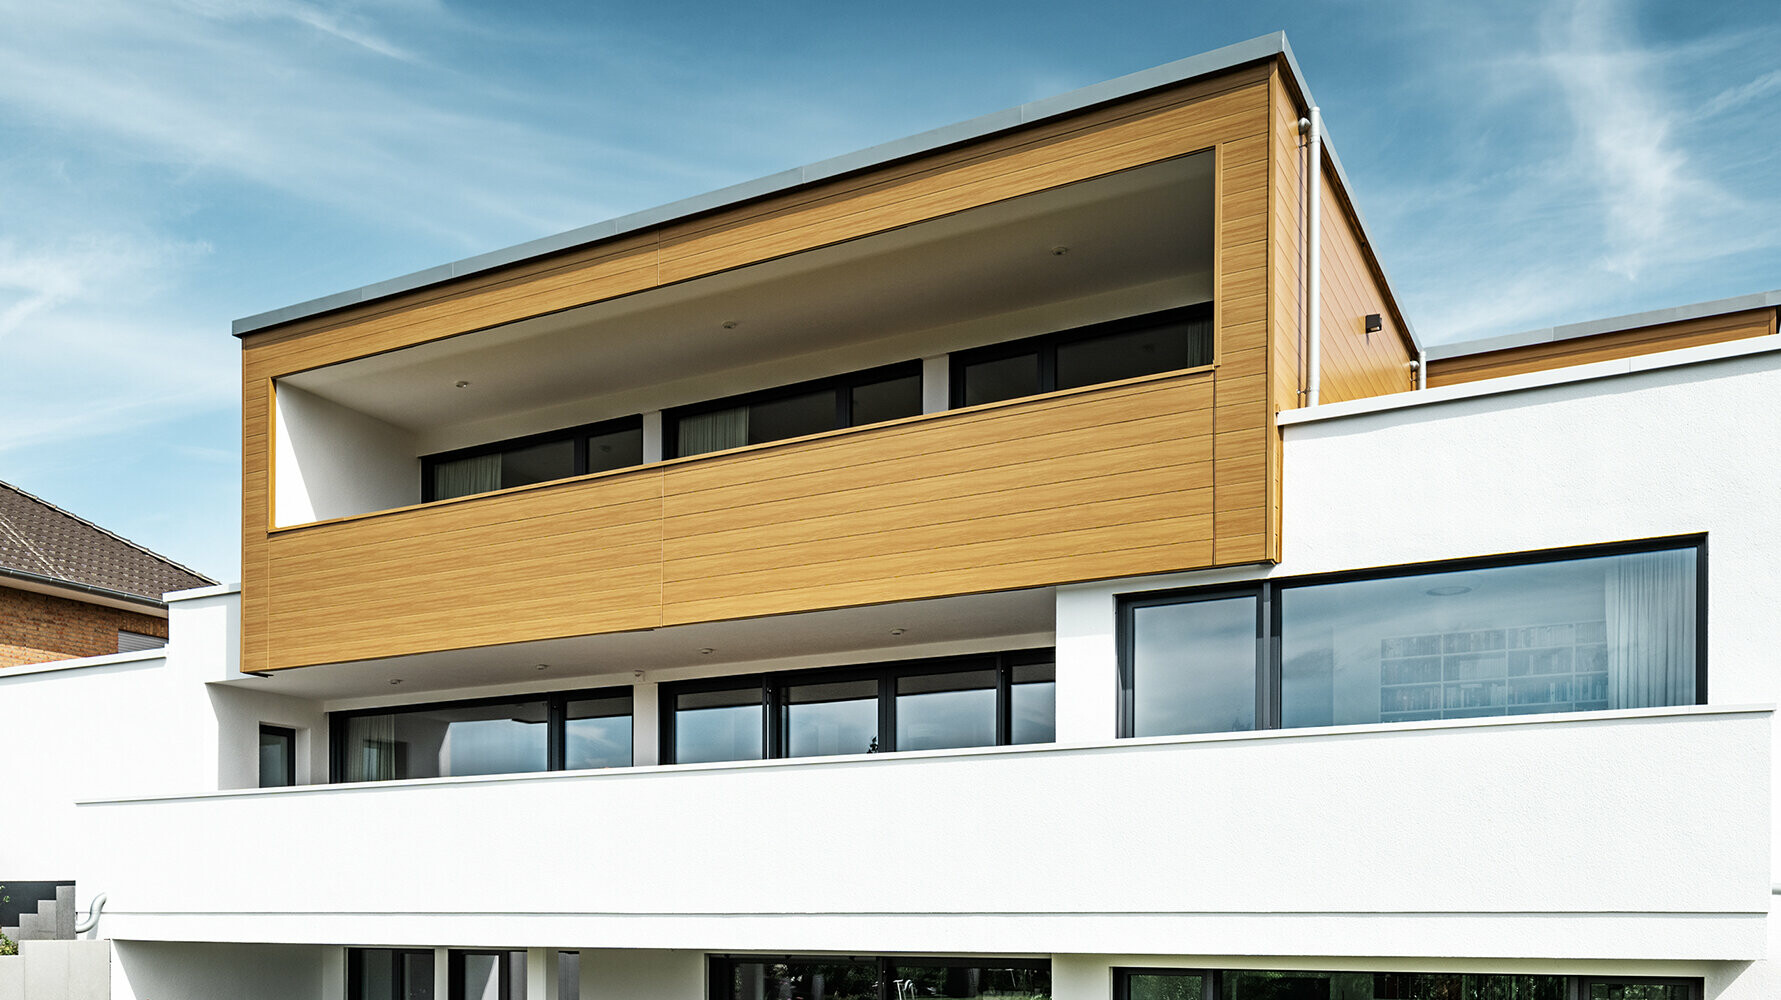 Modernes Wohnhaus verkleidet mit PREFA Sidings in der Farbe Eiche natur.